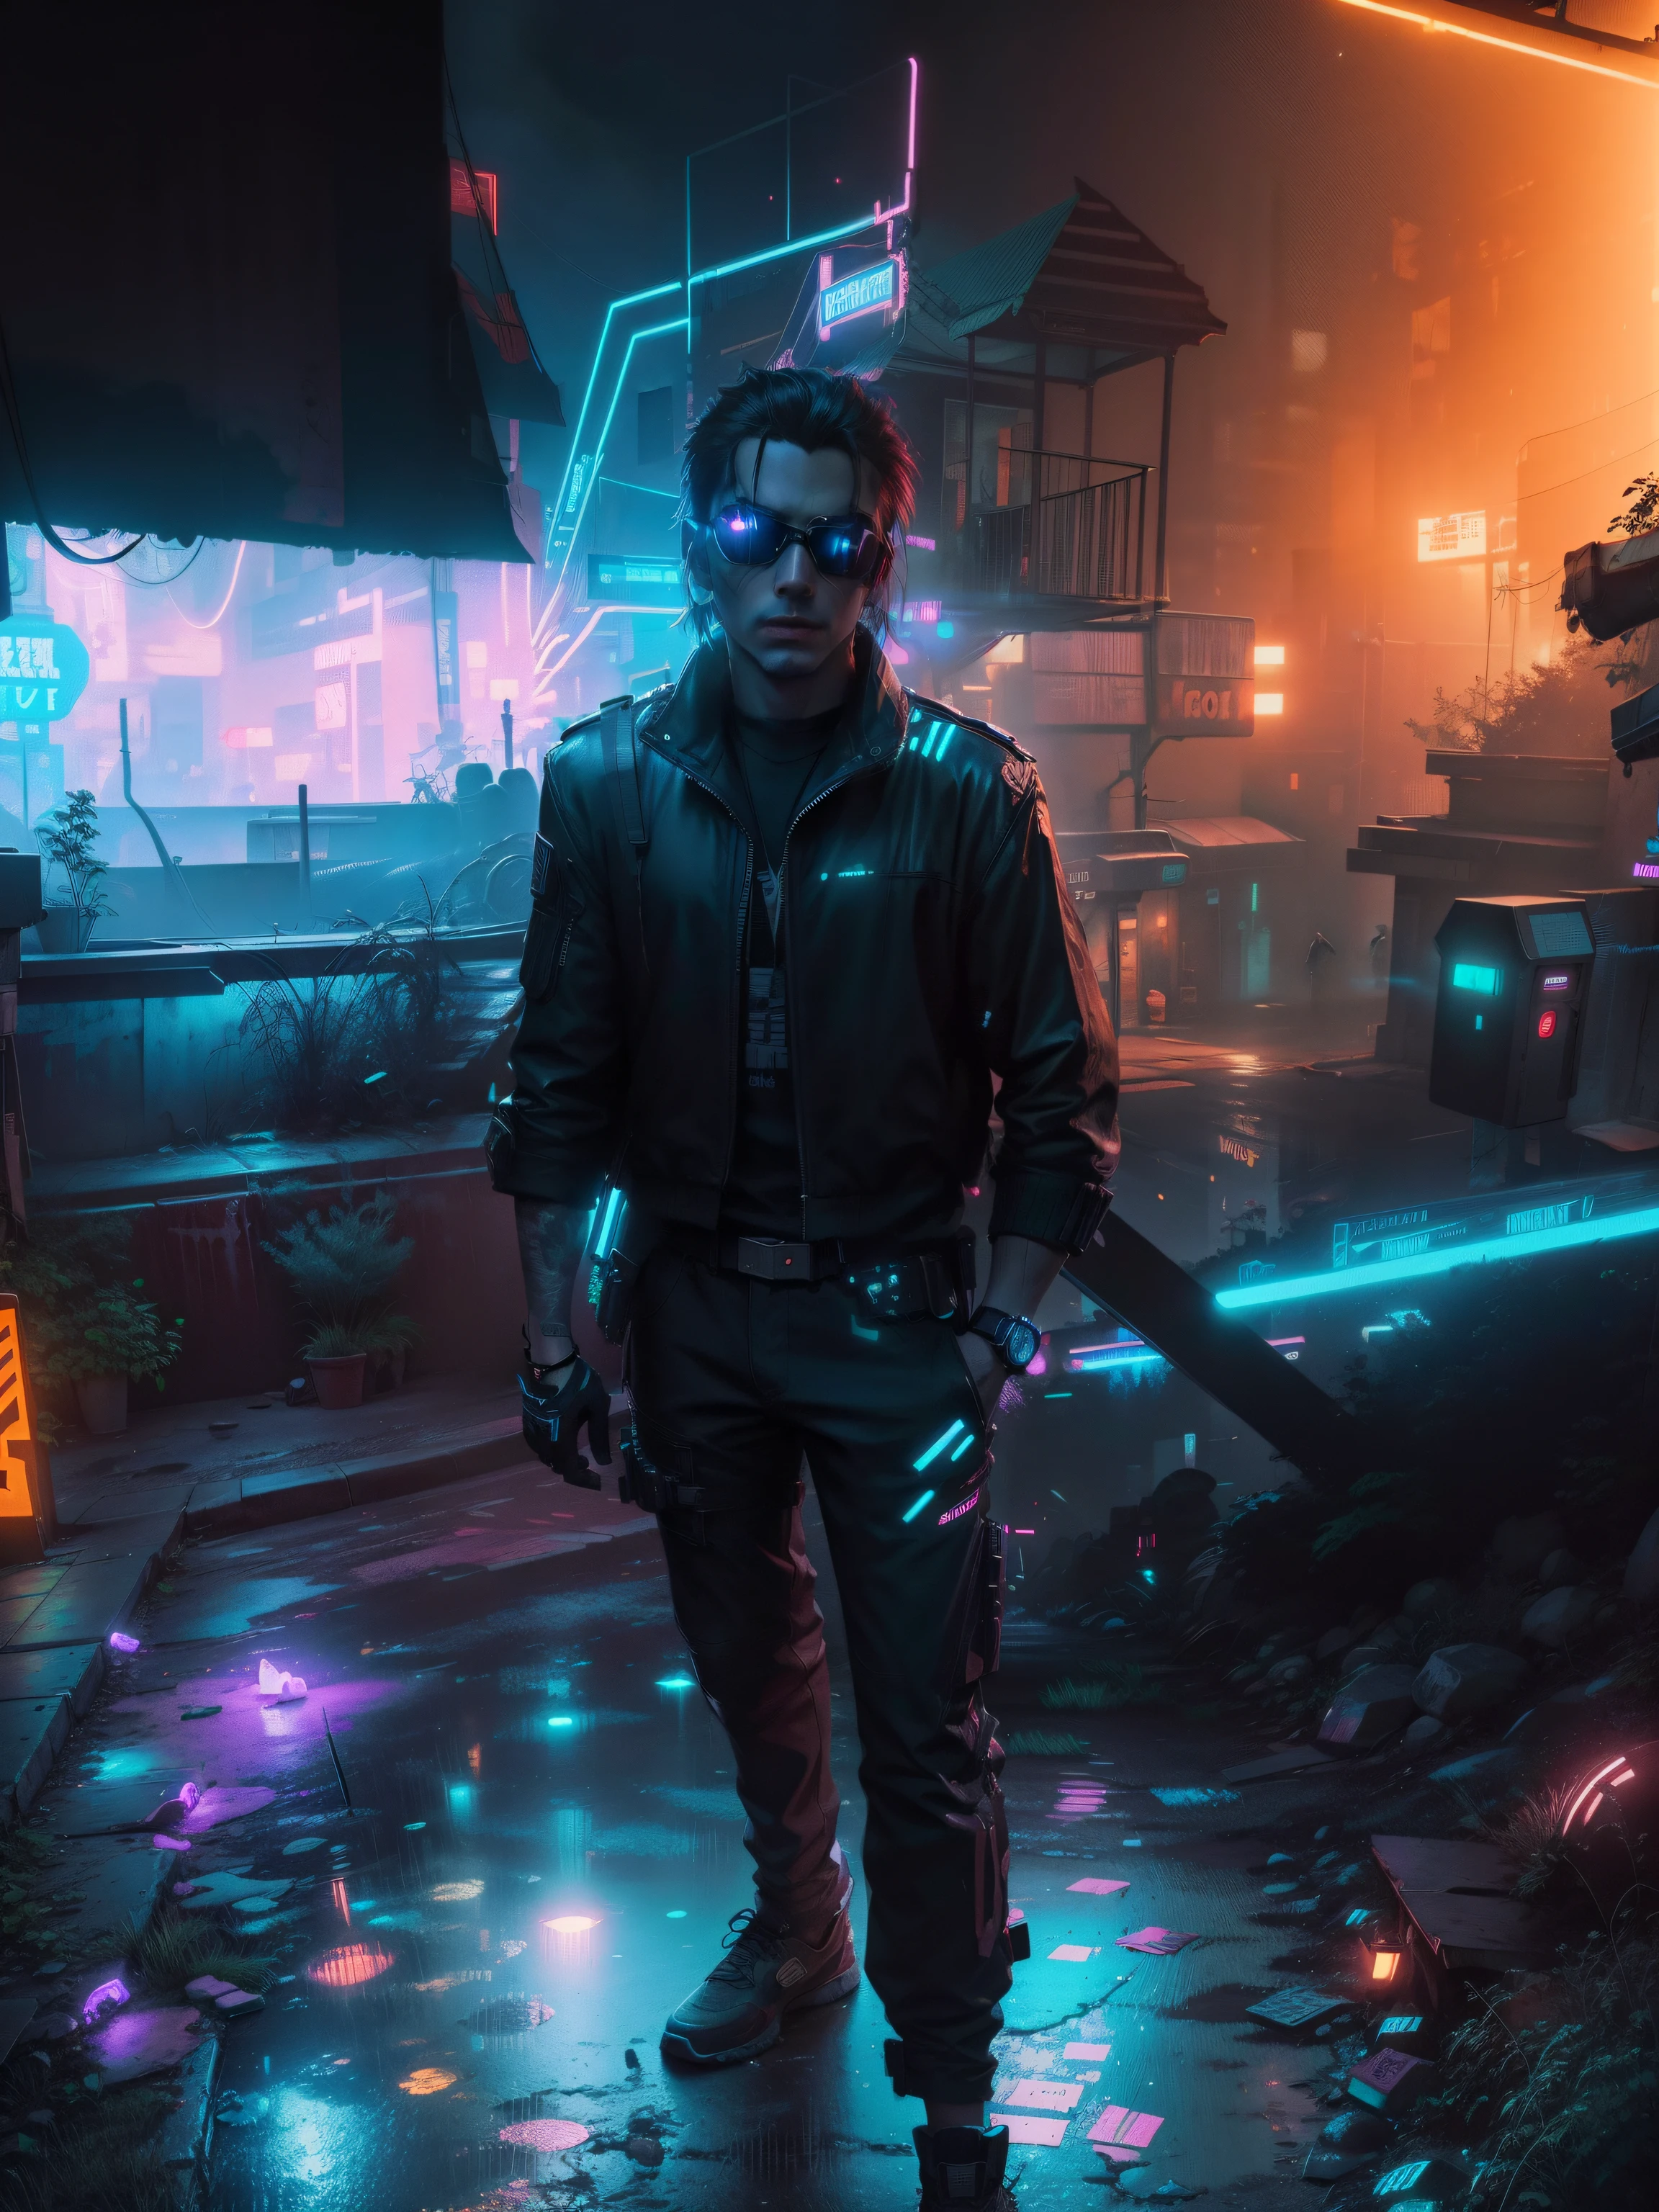 Eine neonbeleuchtete Gasse in einer Cyberpunk-Stadt, mit einer einsamen Gestalt, die hindurchgeht, 8k, HDR